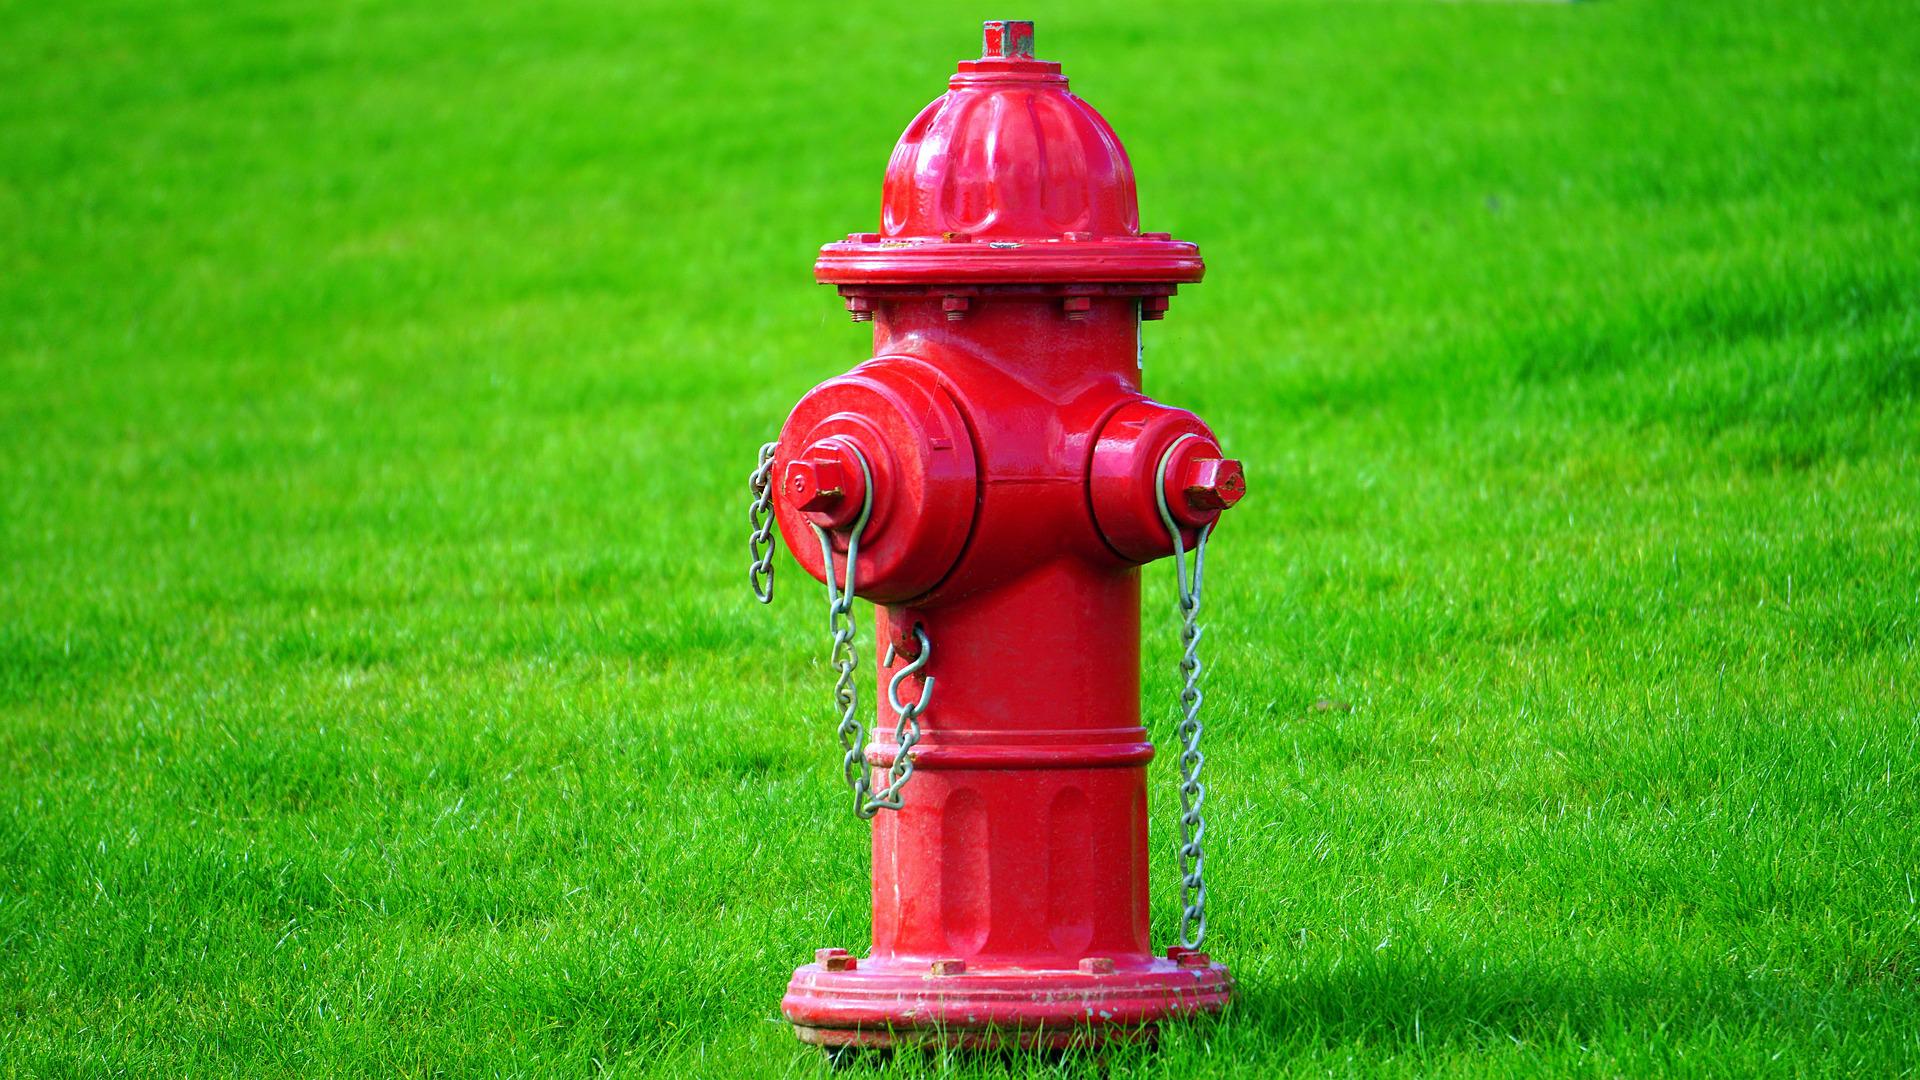 Czerwony hydrant stojący na trawie.